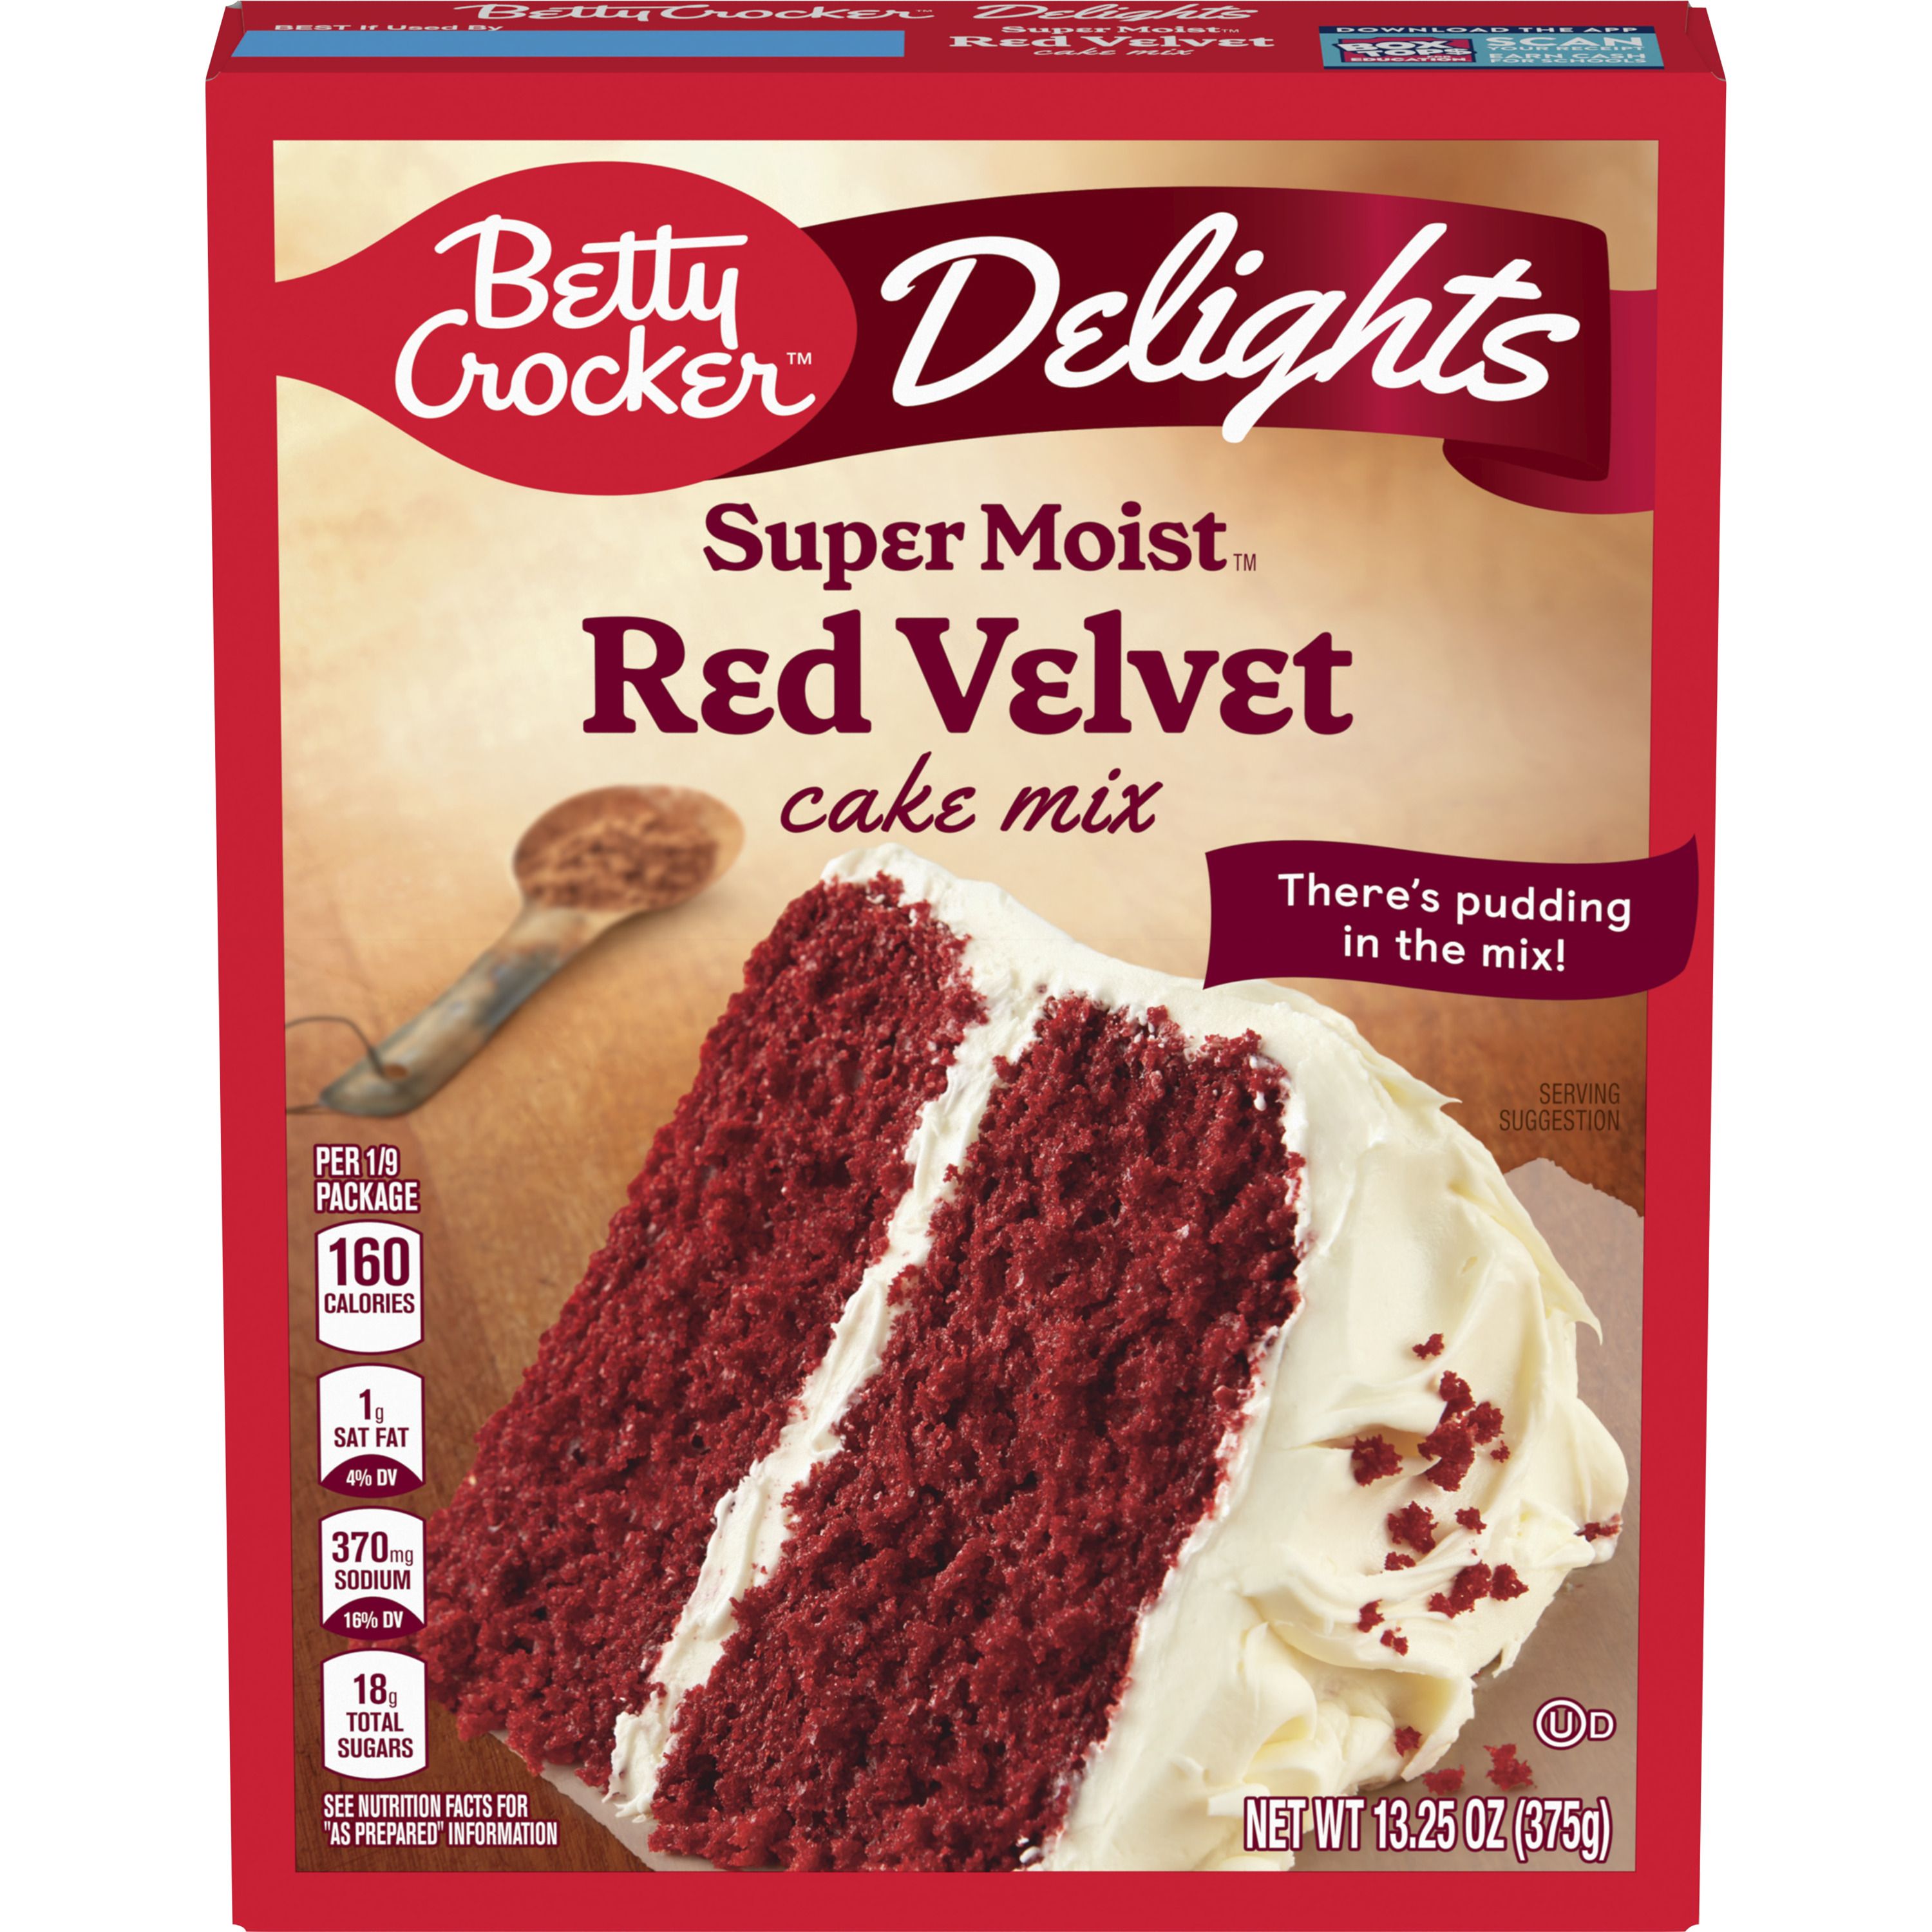 Betty Crocker Delights Super Moist Red Velvet Cake Mix, 13.25 oz. - Front